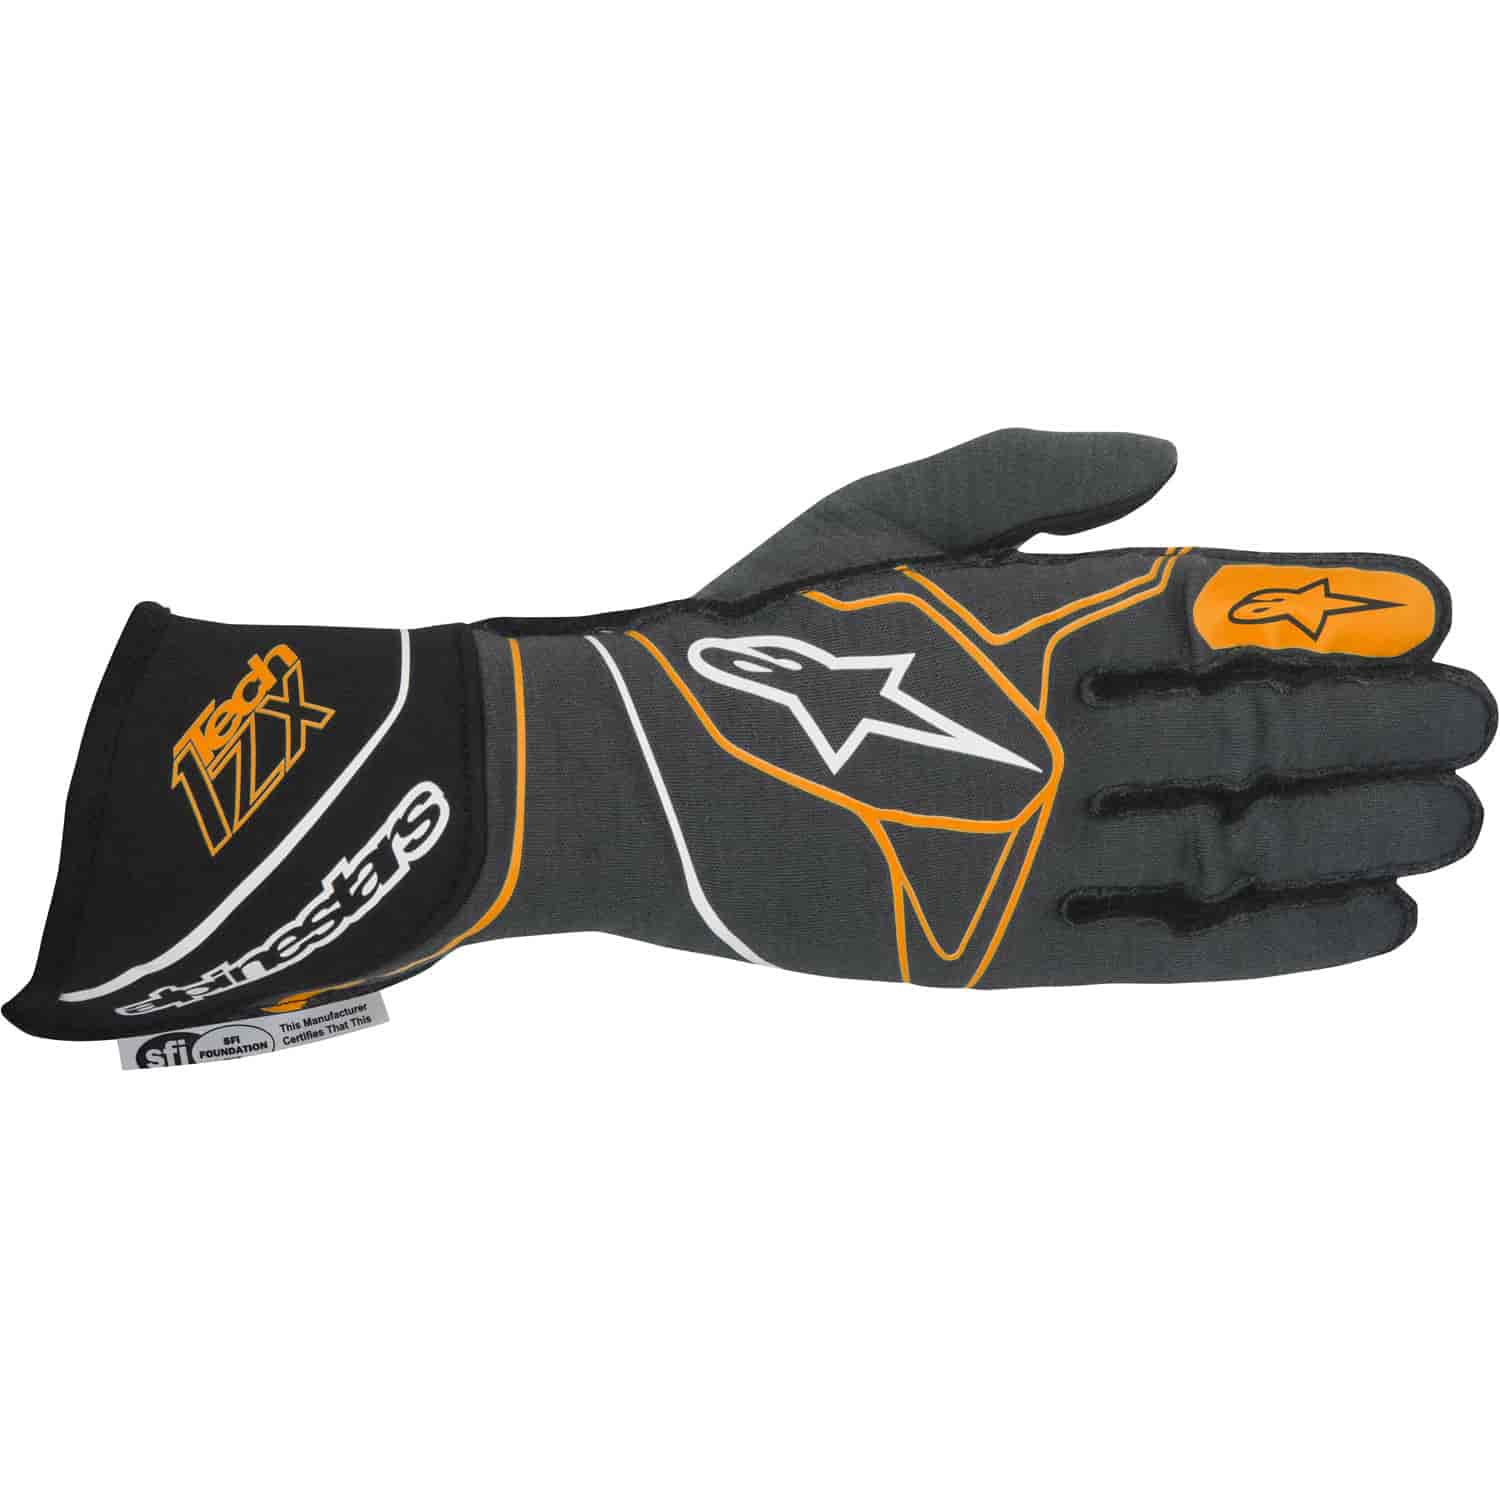 Tech 1-ZX Glove Anthracite/Black/Orange SFI 3.3/5